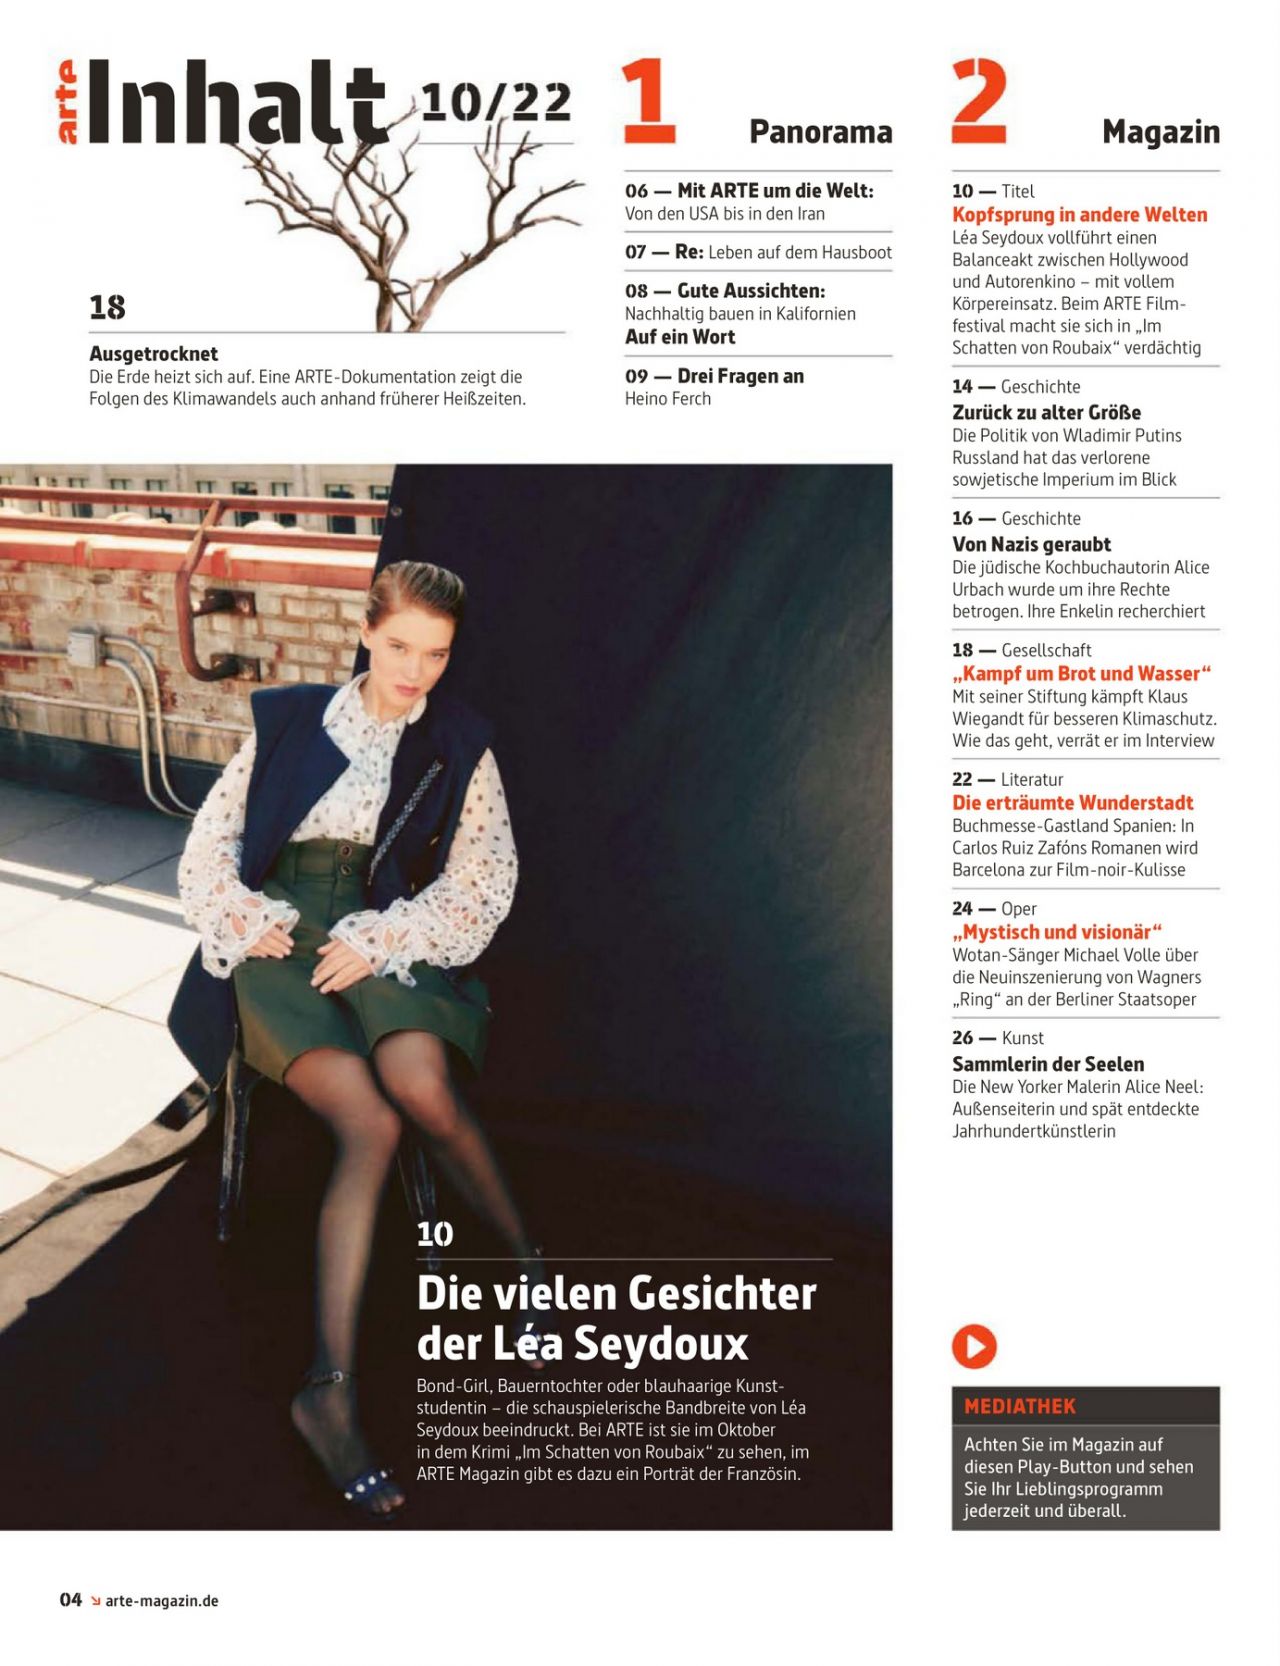 Lea Seydoux - Un Beau Matin Premiere in Paris 10/03/2022 • CelebMafia